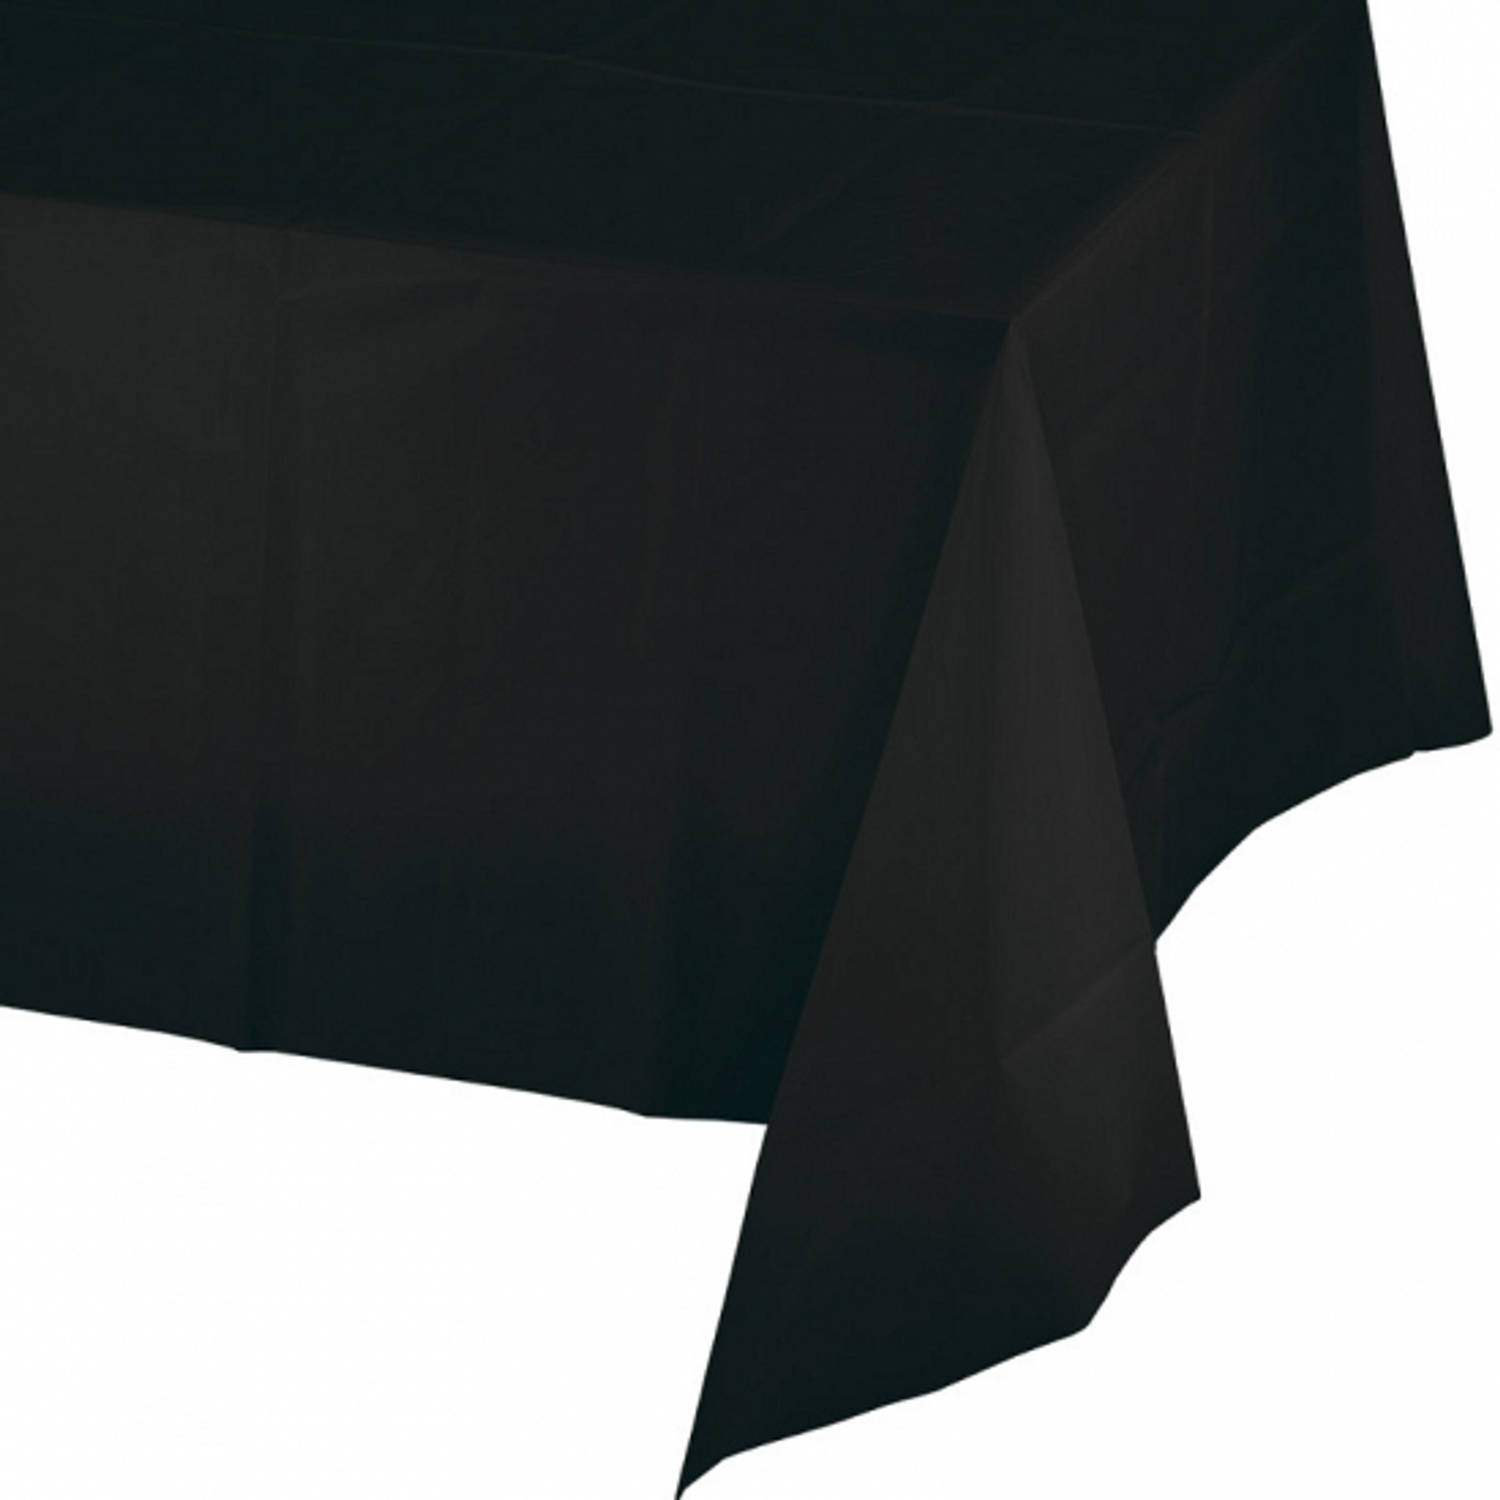 Seraph vertrouwen voordeel Halloween Tafelkleed zwart 274 x 137 cm - Feesttafelkleden | Blokker